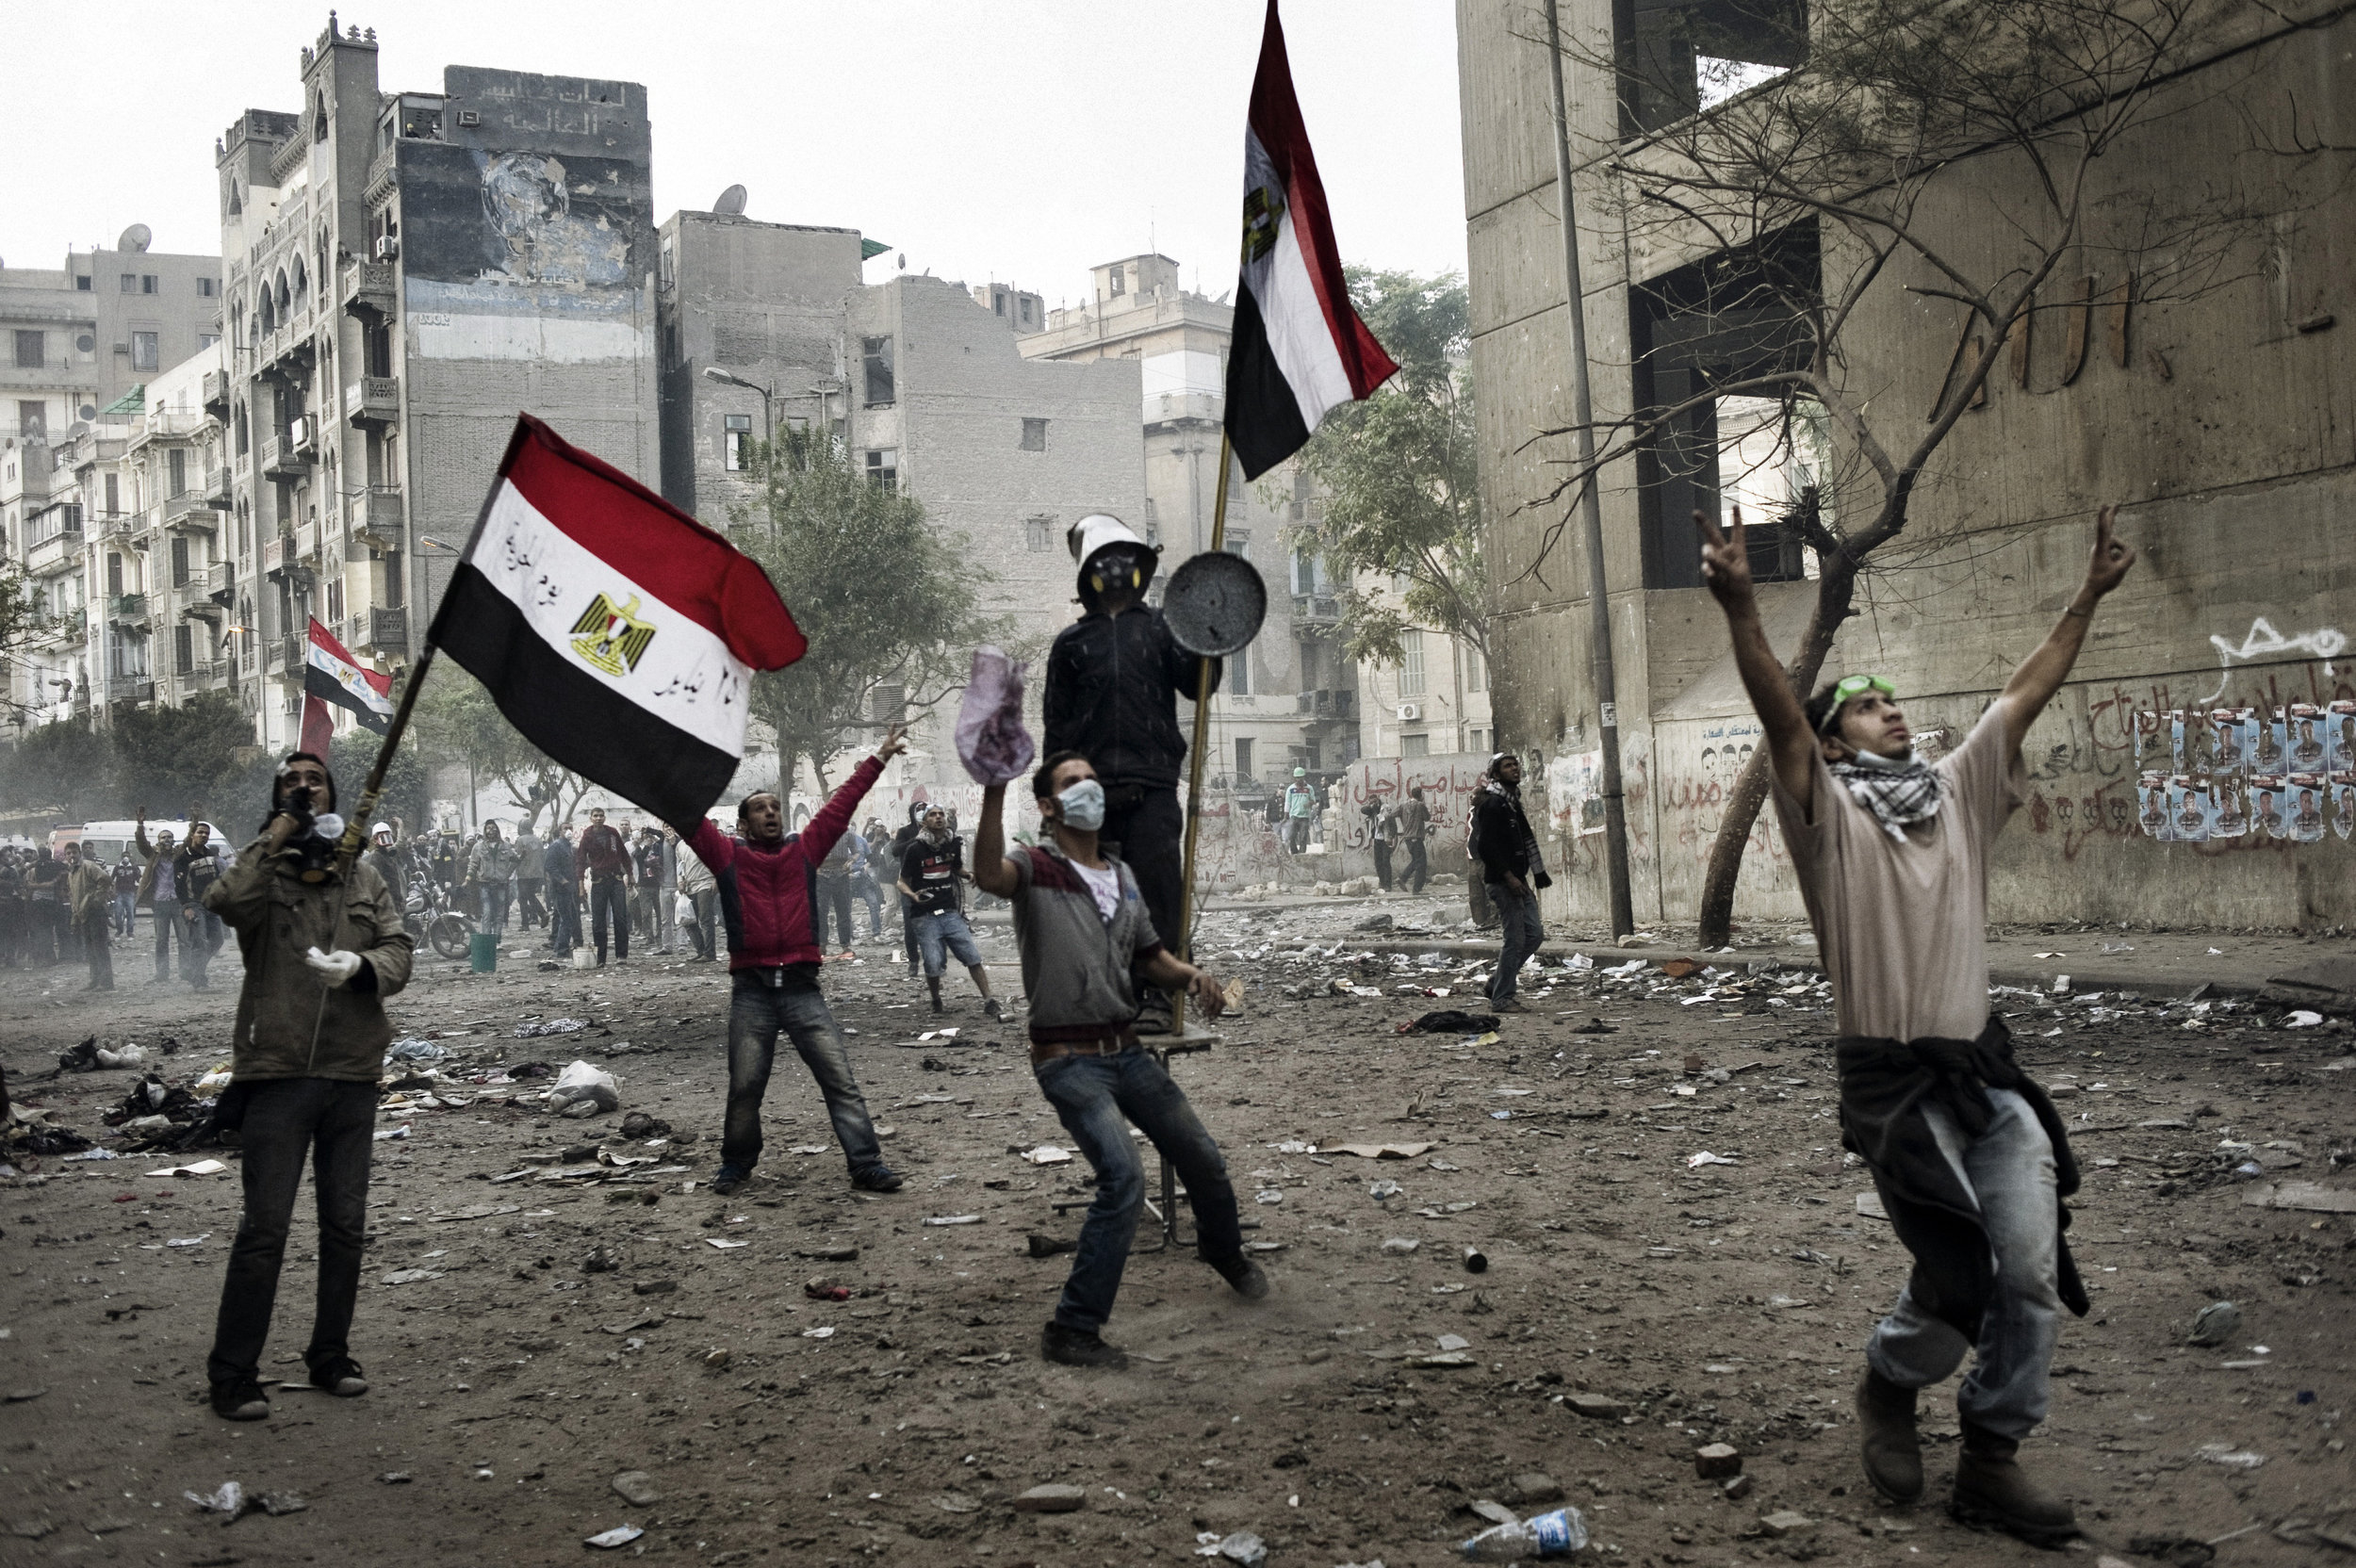  Cairo Egypt November 23, 2011:The battle zone along Mohamed Mahmoud street in Cairo, November 23, 2011. 